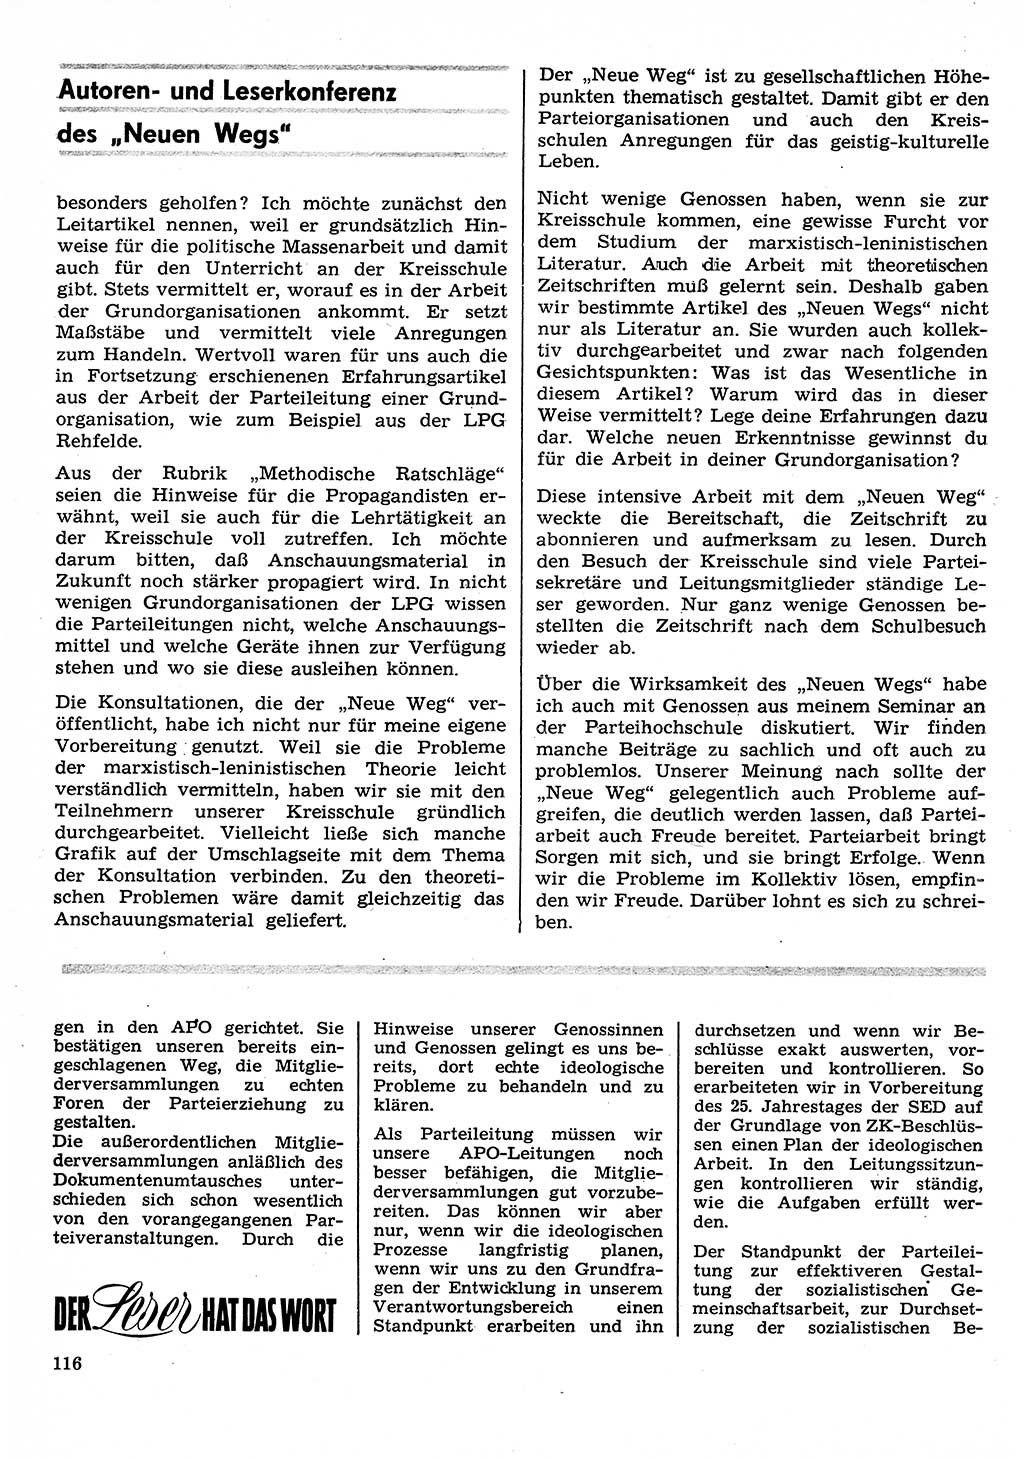 Neuer Weg (NW), Organ des Zentralkomitees (ZK) der SED (Sozialistische Einheitspartei Deutschlands) für Fragen des Parteilebens, 26. Jahrgang [Deutsche Demokratische Republik (DDR)] 1971, Seite 116 (NW ZK SED DDR 1971, S. 116)